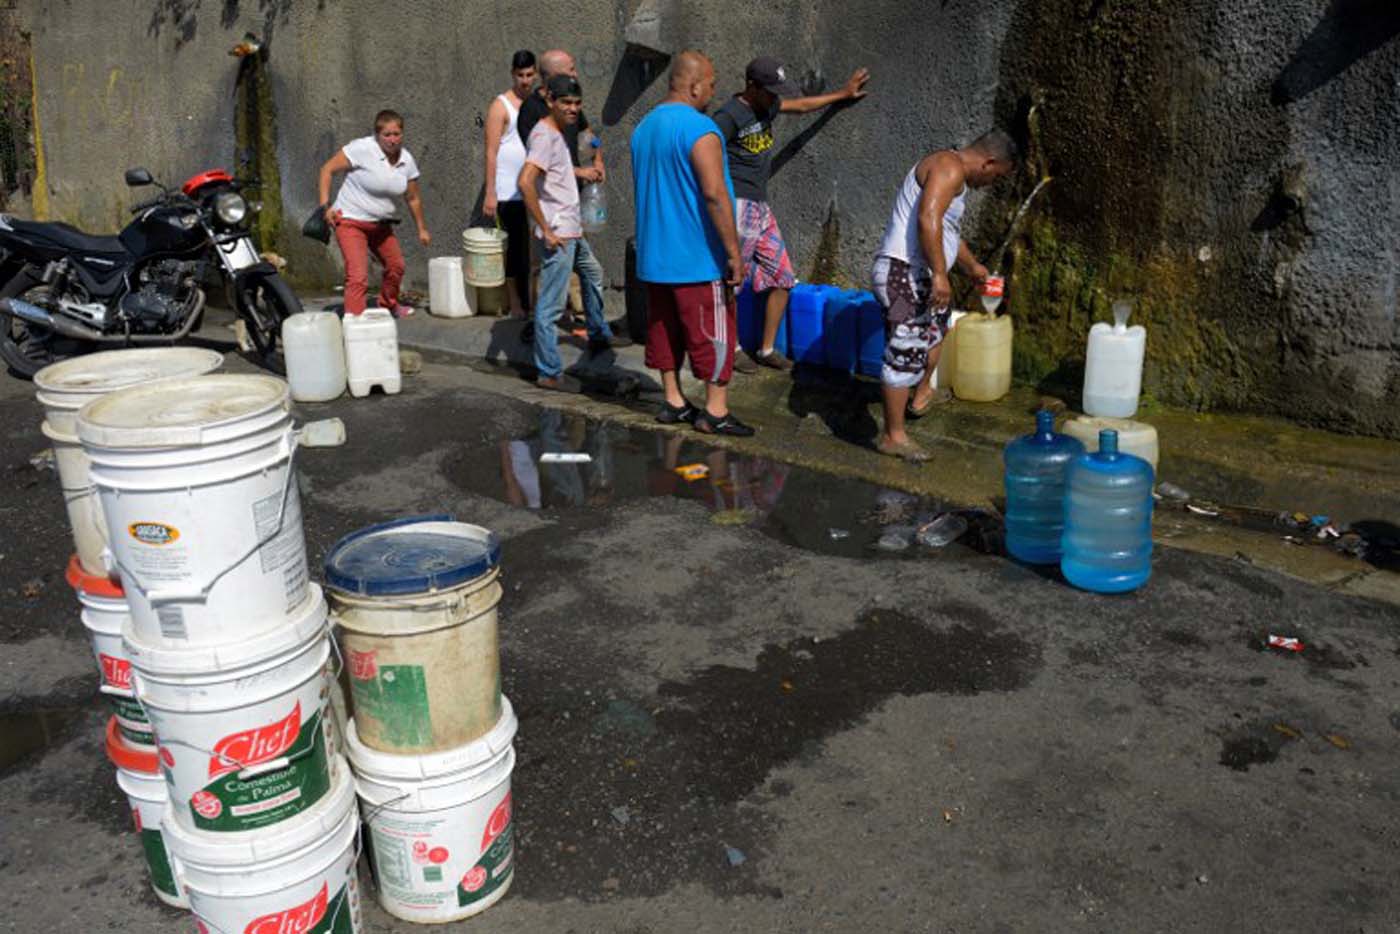 ¡Continúa la ineficiencia! Habitantes de Guatire denuncian que llevan más de 15 días sin agua #23Feb